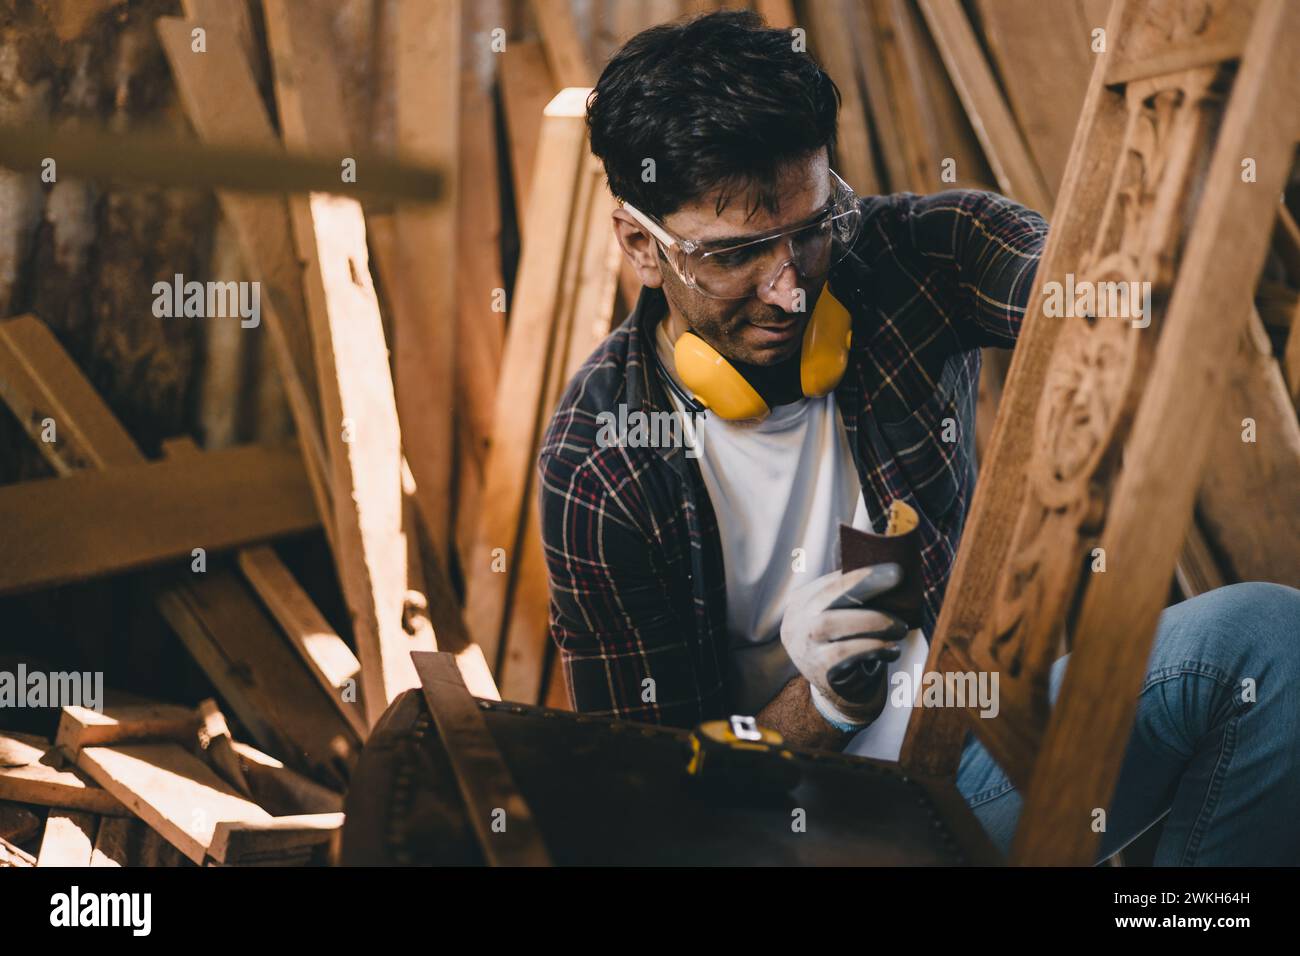 falegname professionista che lavora a mano realizza mobili artigianali in legno capolavori di dettagli artigianali artigiani con officina in legno. Foto Stock